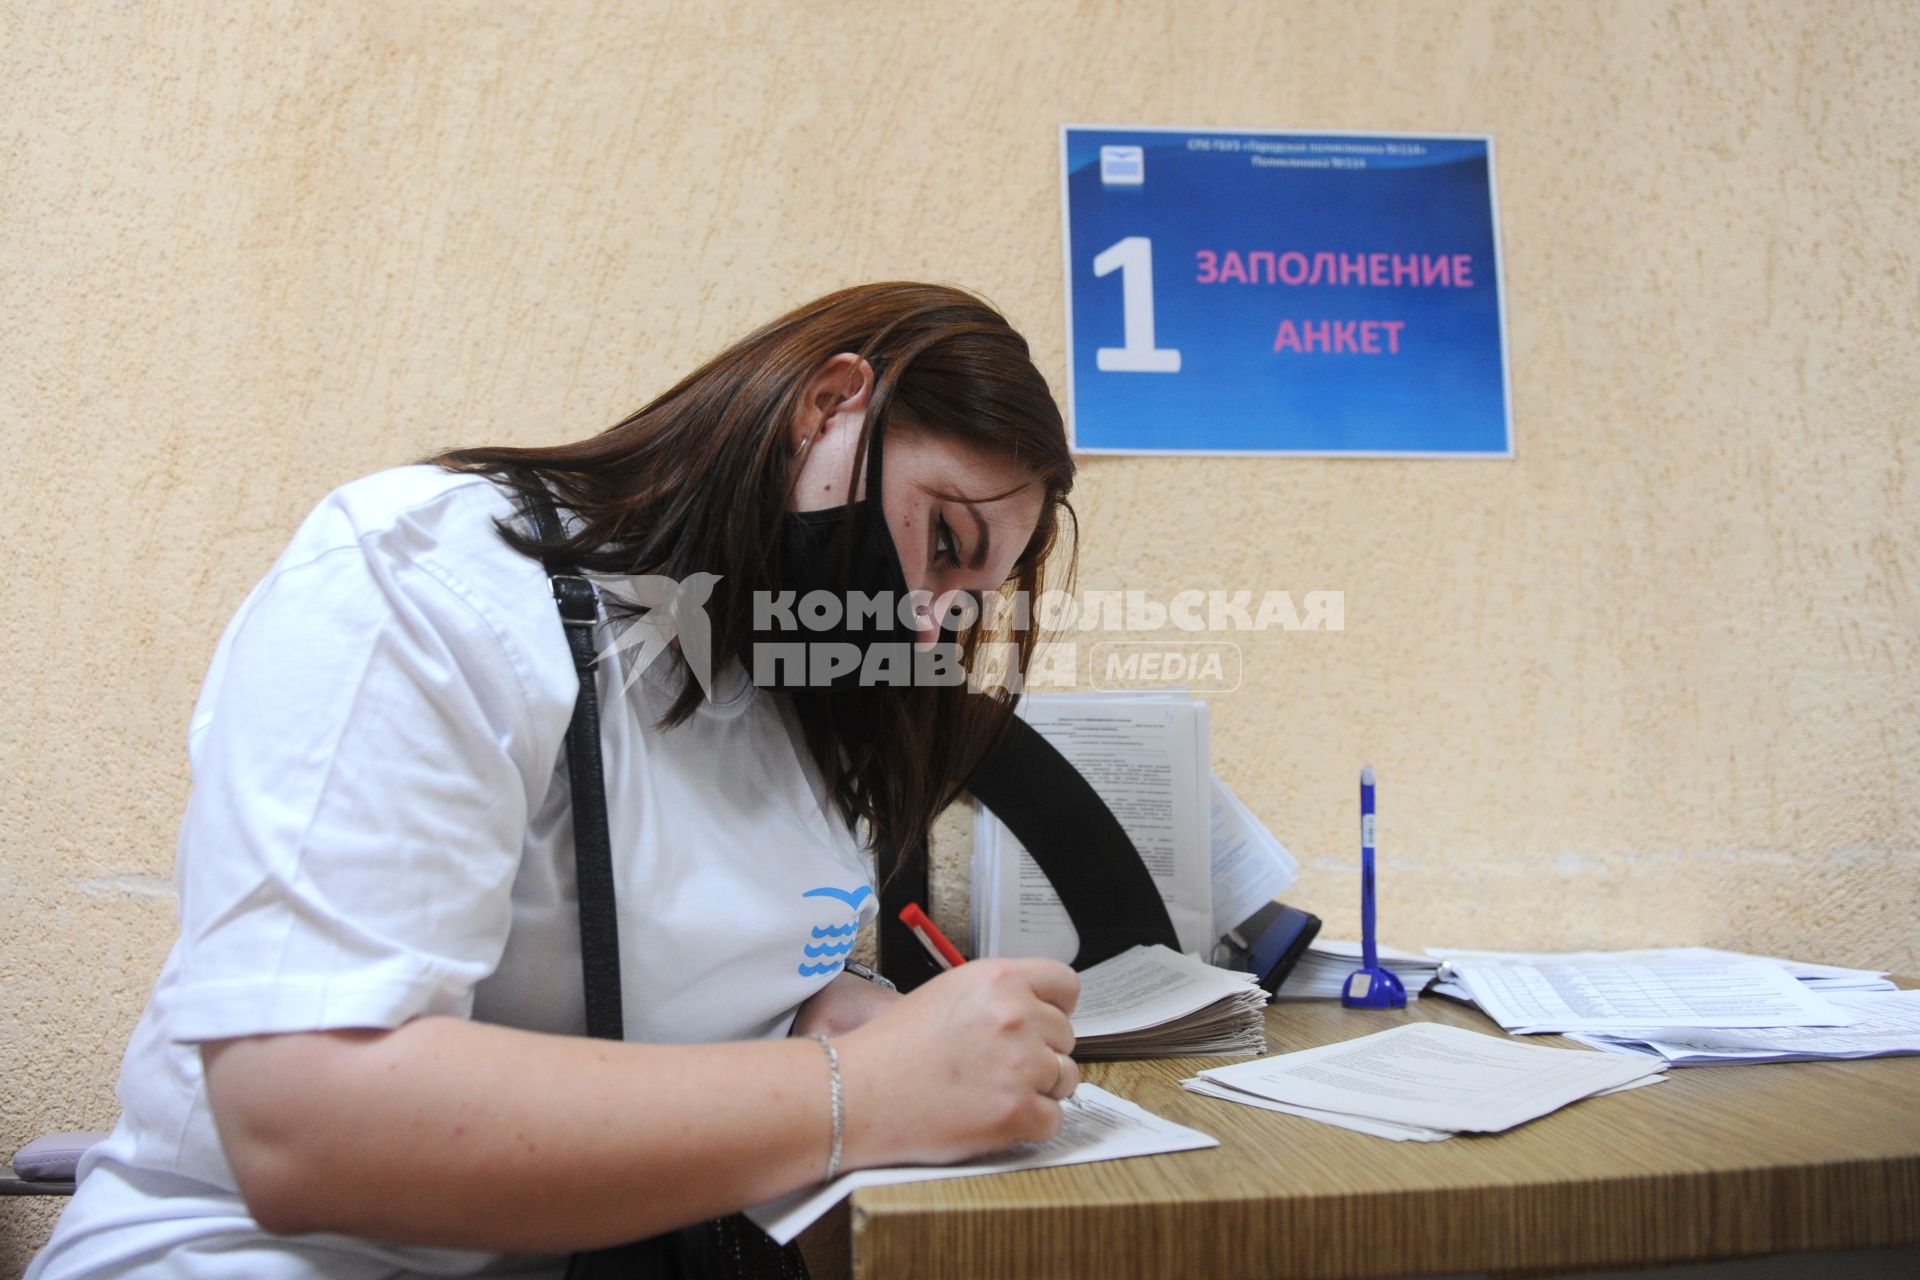 Санкт-Петербург. Активистка Приморского района заполняет анкету перед вакцинацией от коронавирусной инфекции в поликлинике